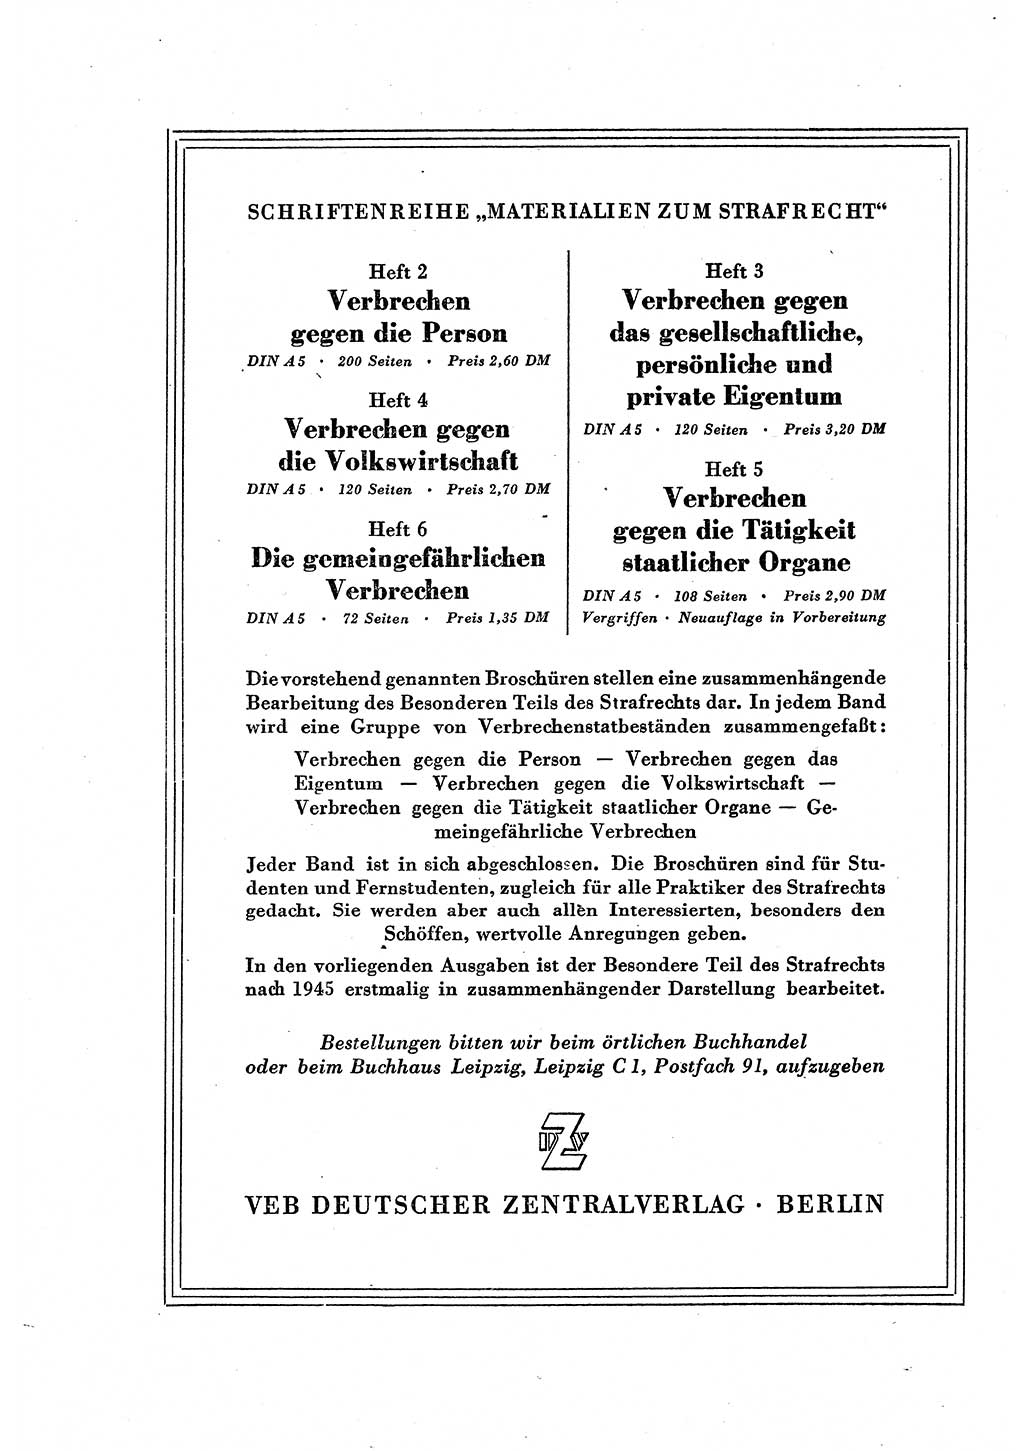 Strafverfahren in der Deutschen Demokratischen Republik (DDR) und seine demokratischen Prinzipien 1956, Seite 56 (Str.-Verf. DDR 1956, S. 56)